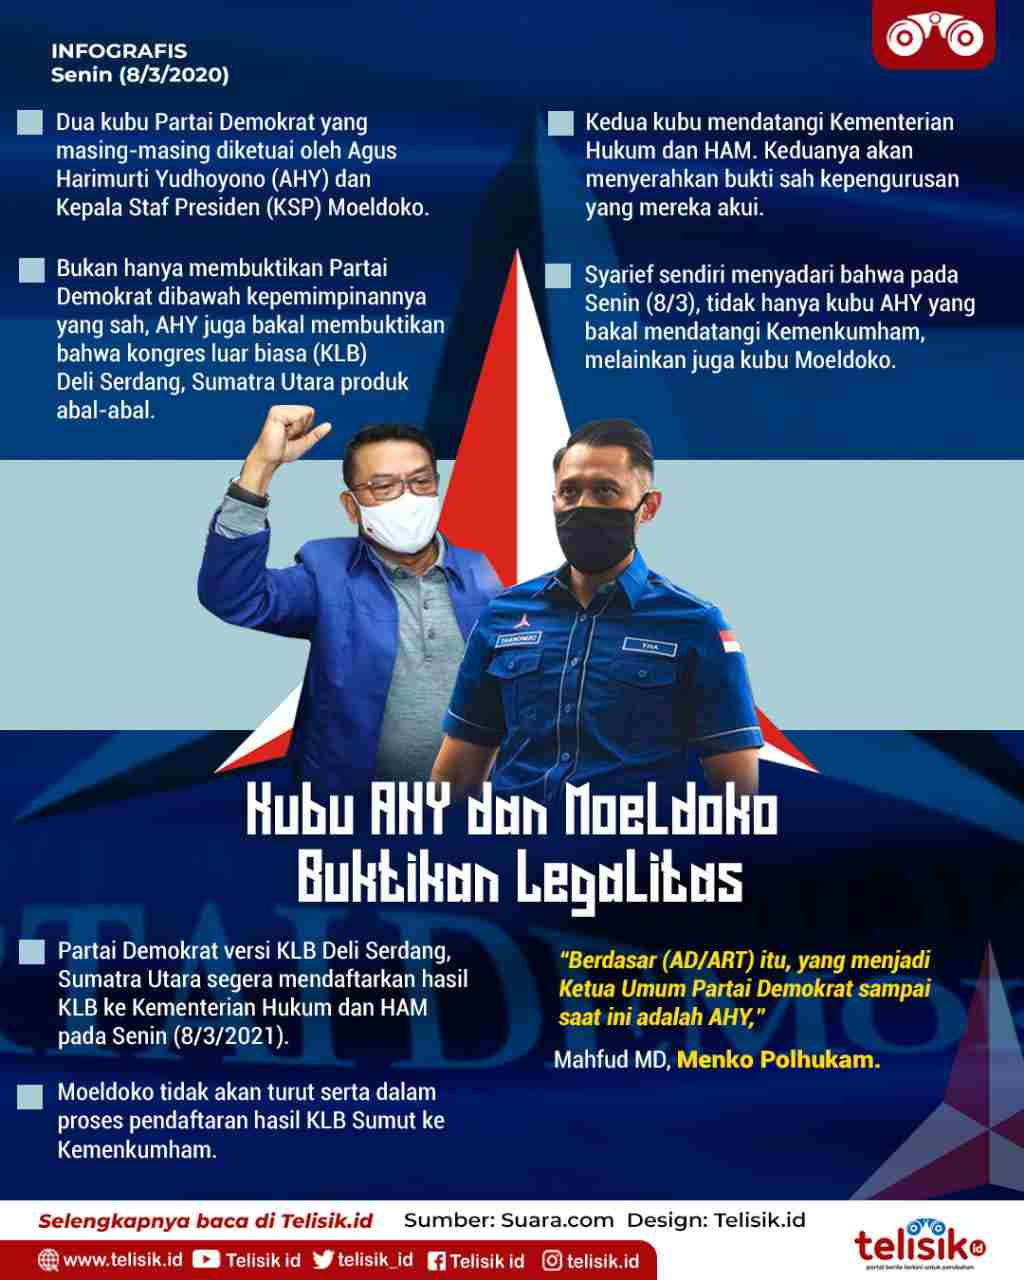 Infografis: Kubu AHY dan Moeldoko Buktikan Legalitas